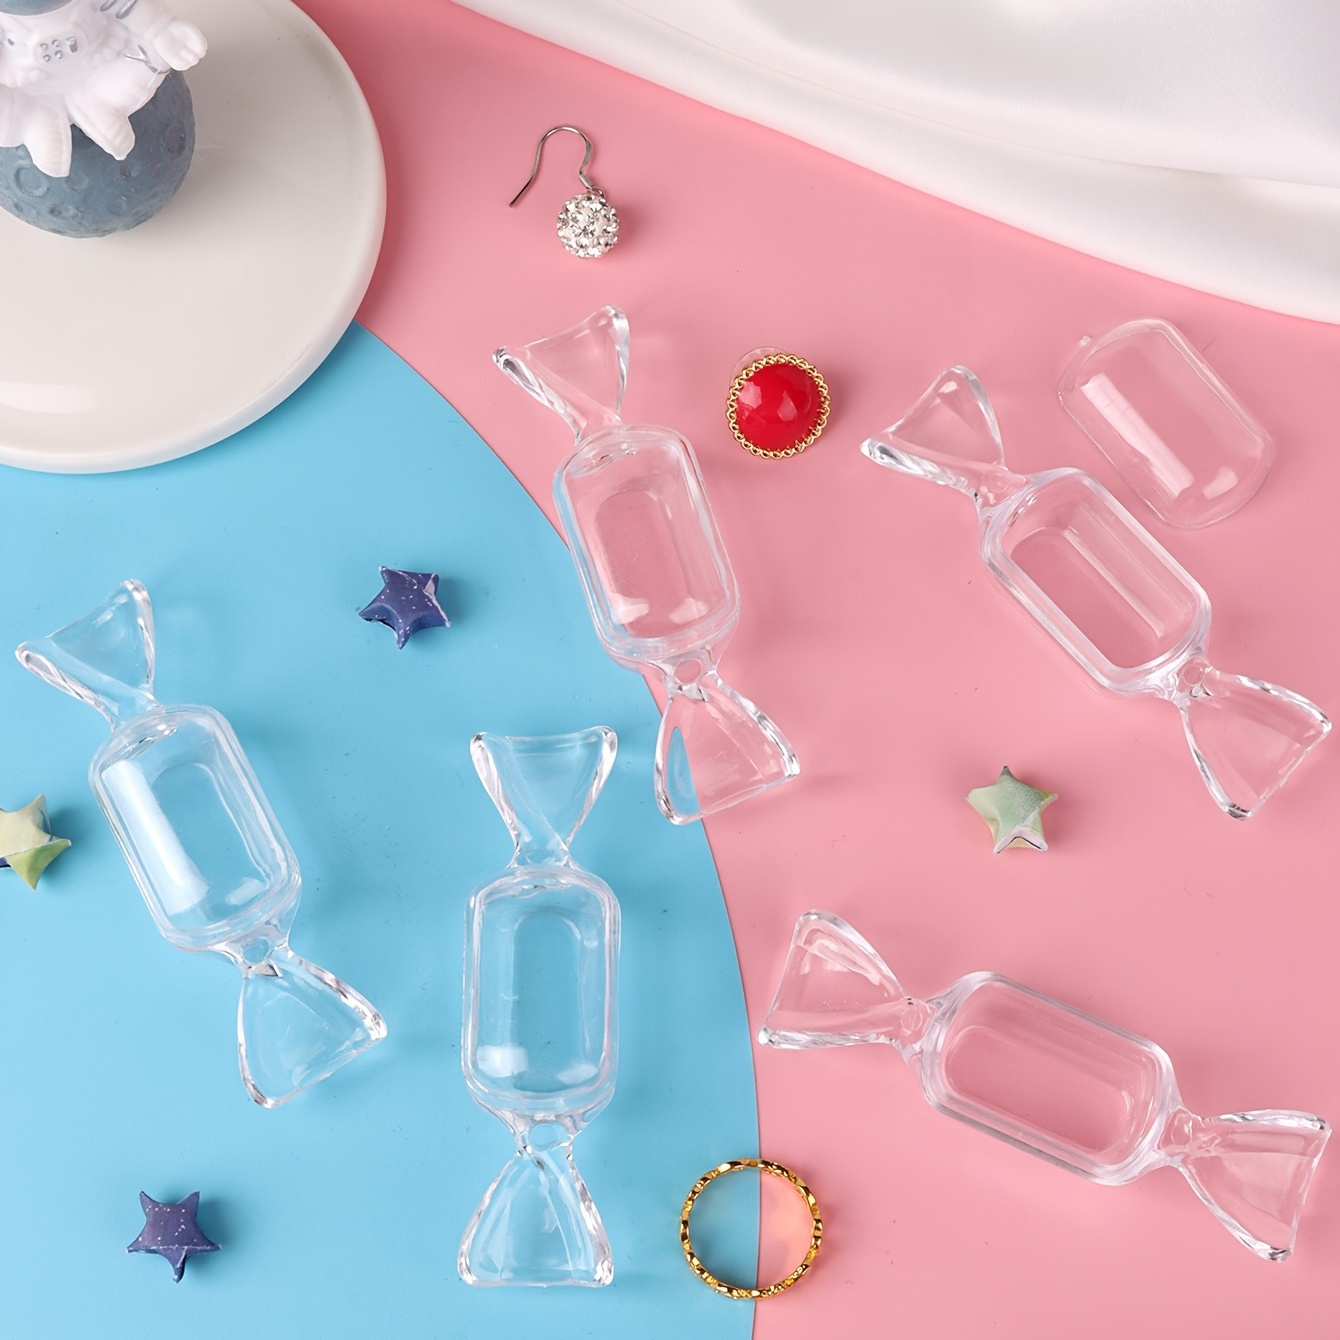 

10 Pcs Clear Plastic Insert Candy Ring Small Jewelry Storage Box Mini Cute Transparent Accessories Jewelry Display Box